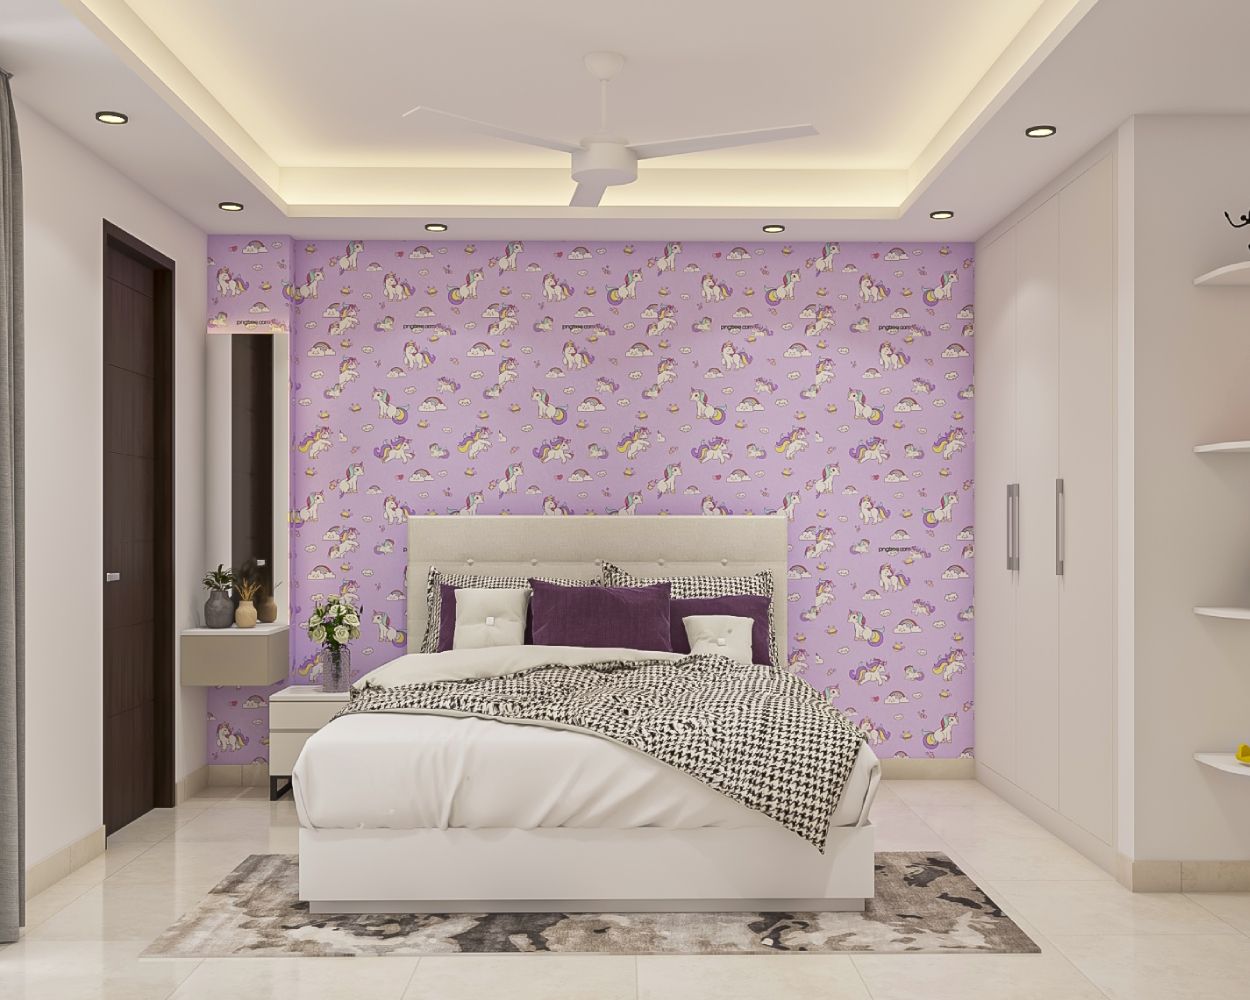 Modern Kids Room Design For Girls With Lavender Unicorn-Themed Wallpaper